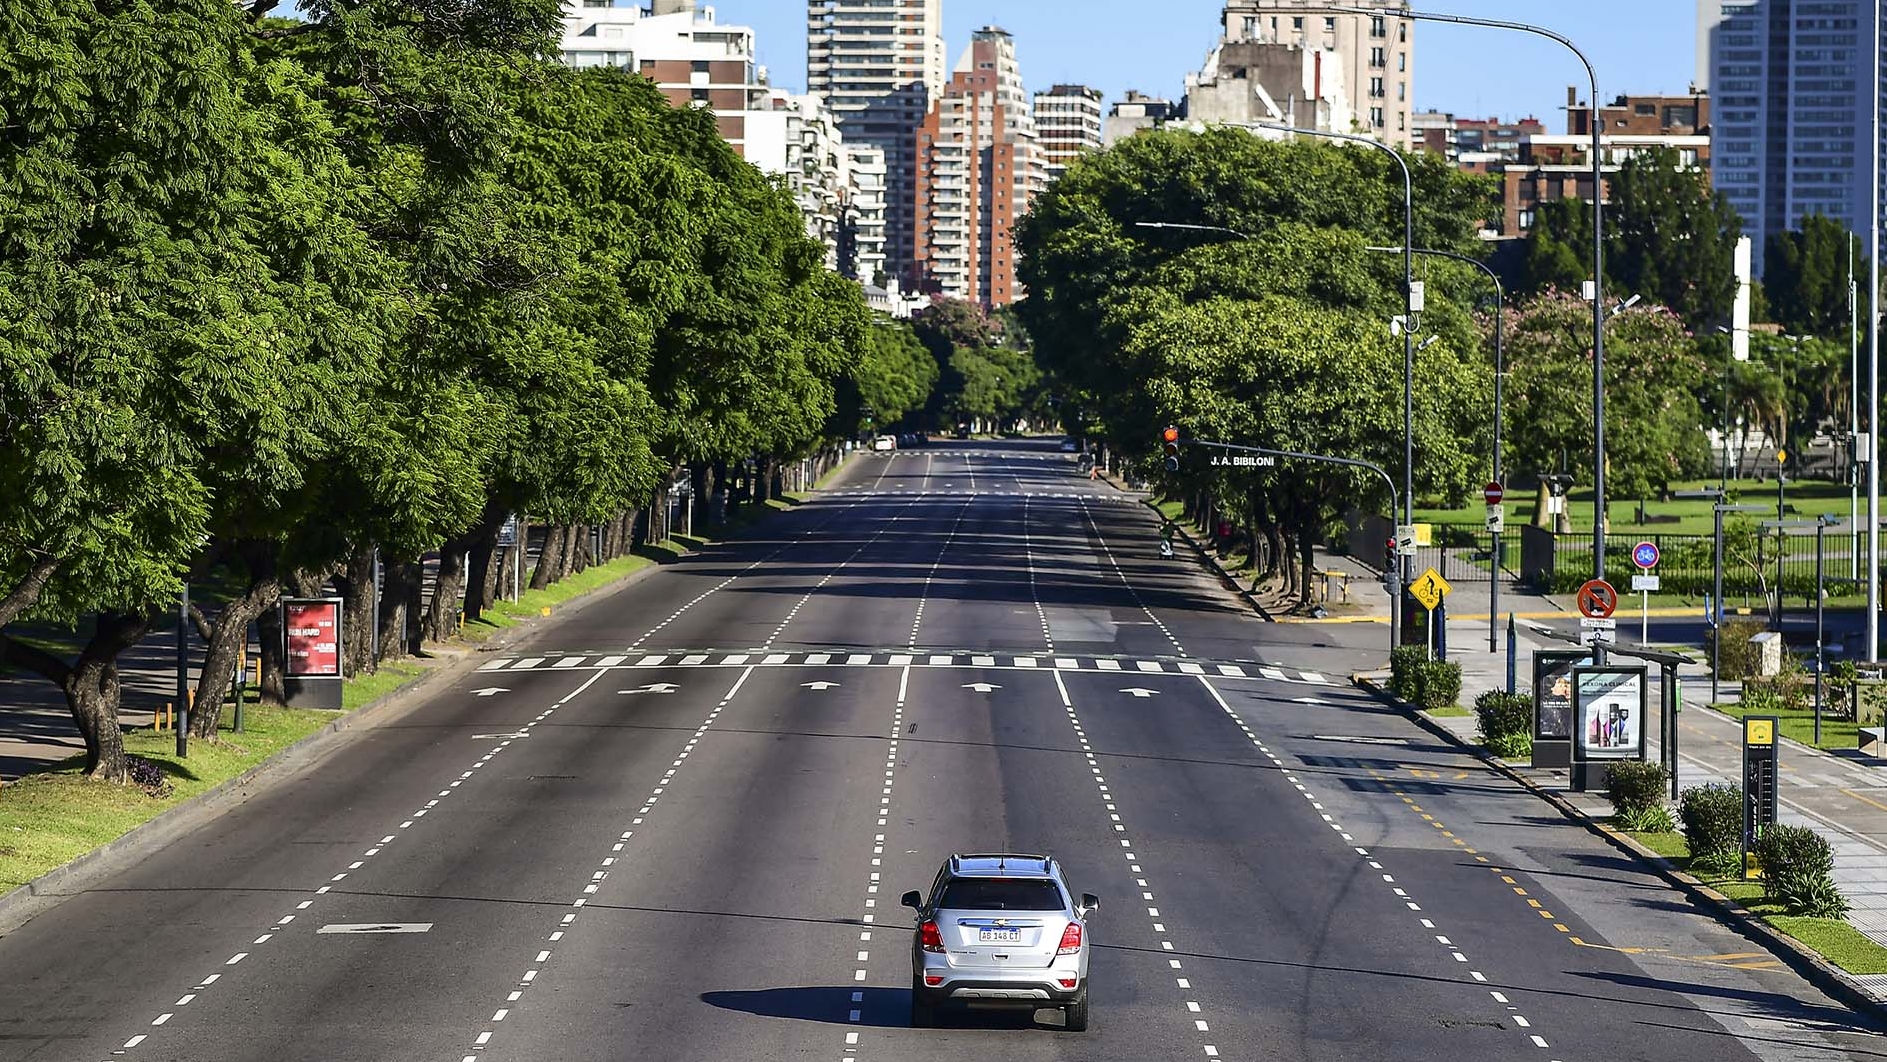 Una imagen de Buenos Aires el 20 de marzo, el primer día de la larga cuarentena 2020. Según los economistas consultados, imposible reeditar una experiencia semejante  (Photo by RONALDO SCHEMIDT / AFP)